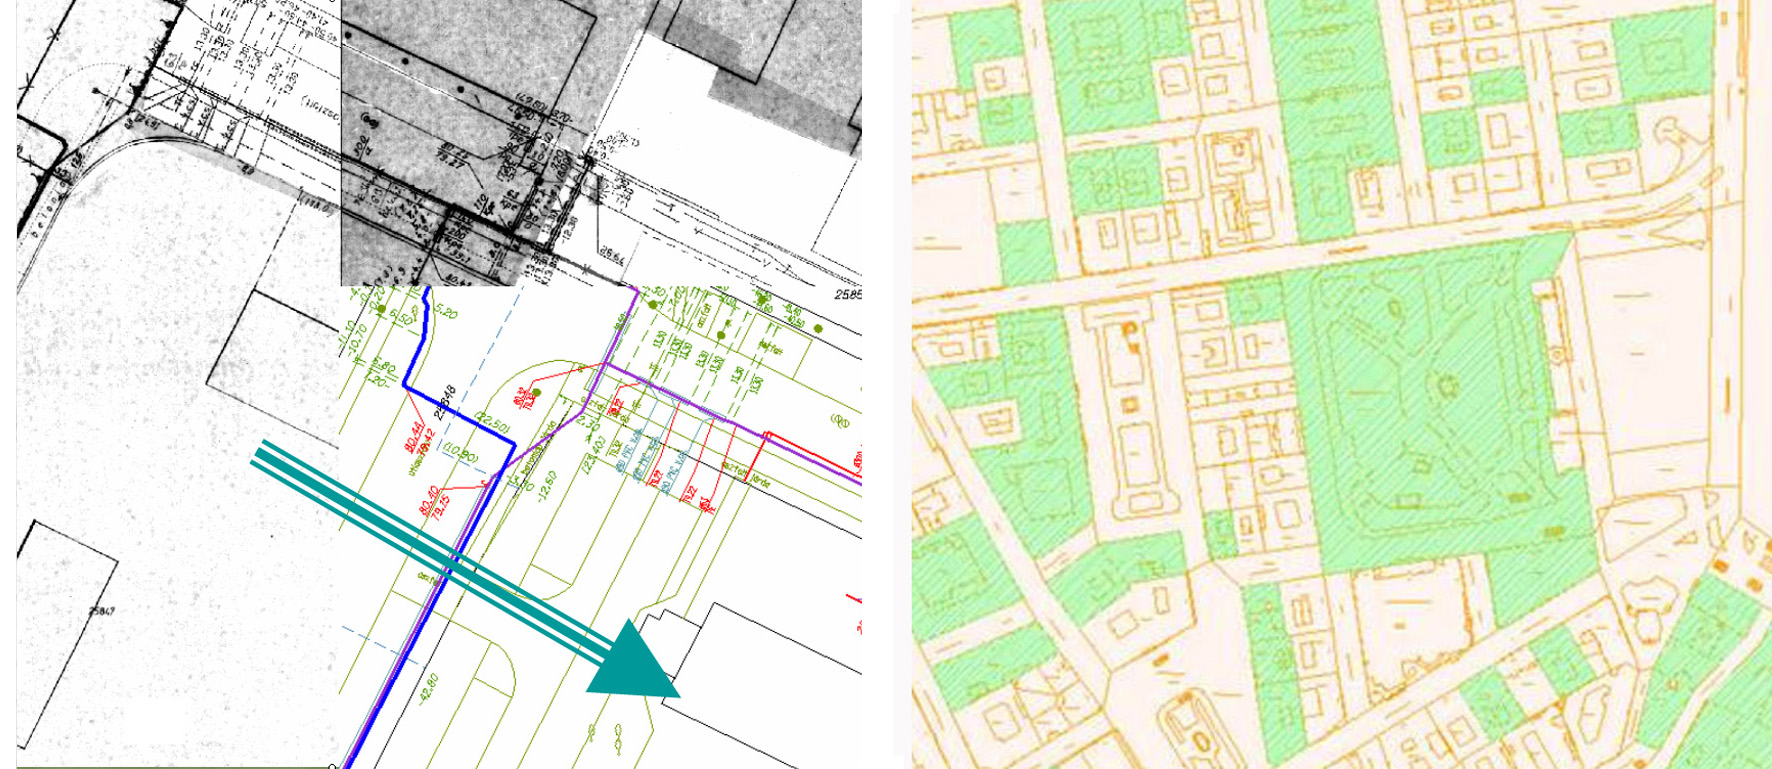 Digitális földhivatali alaptérkép (BEVET) vektorizálása és GIS alkalmazása (műemlékvédelem alatt álló épületek lekérdezése)